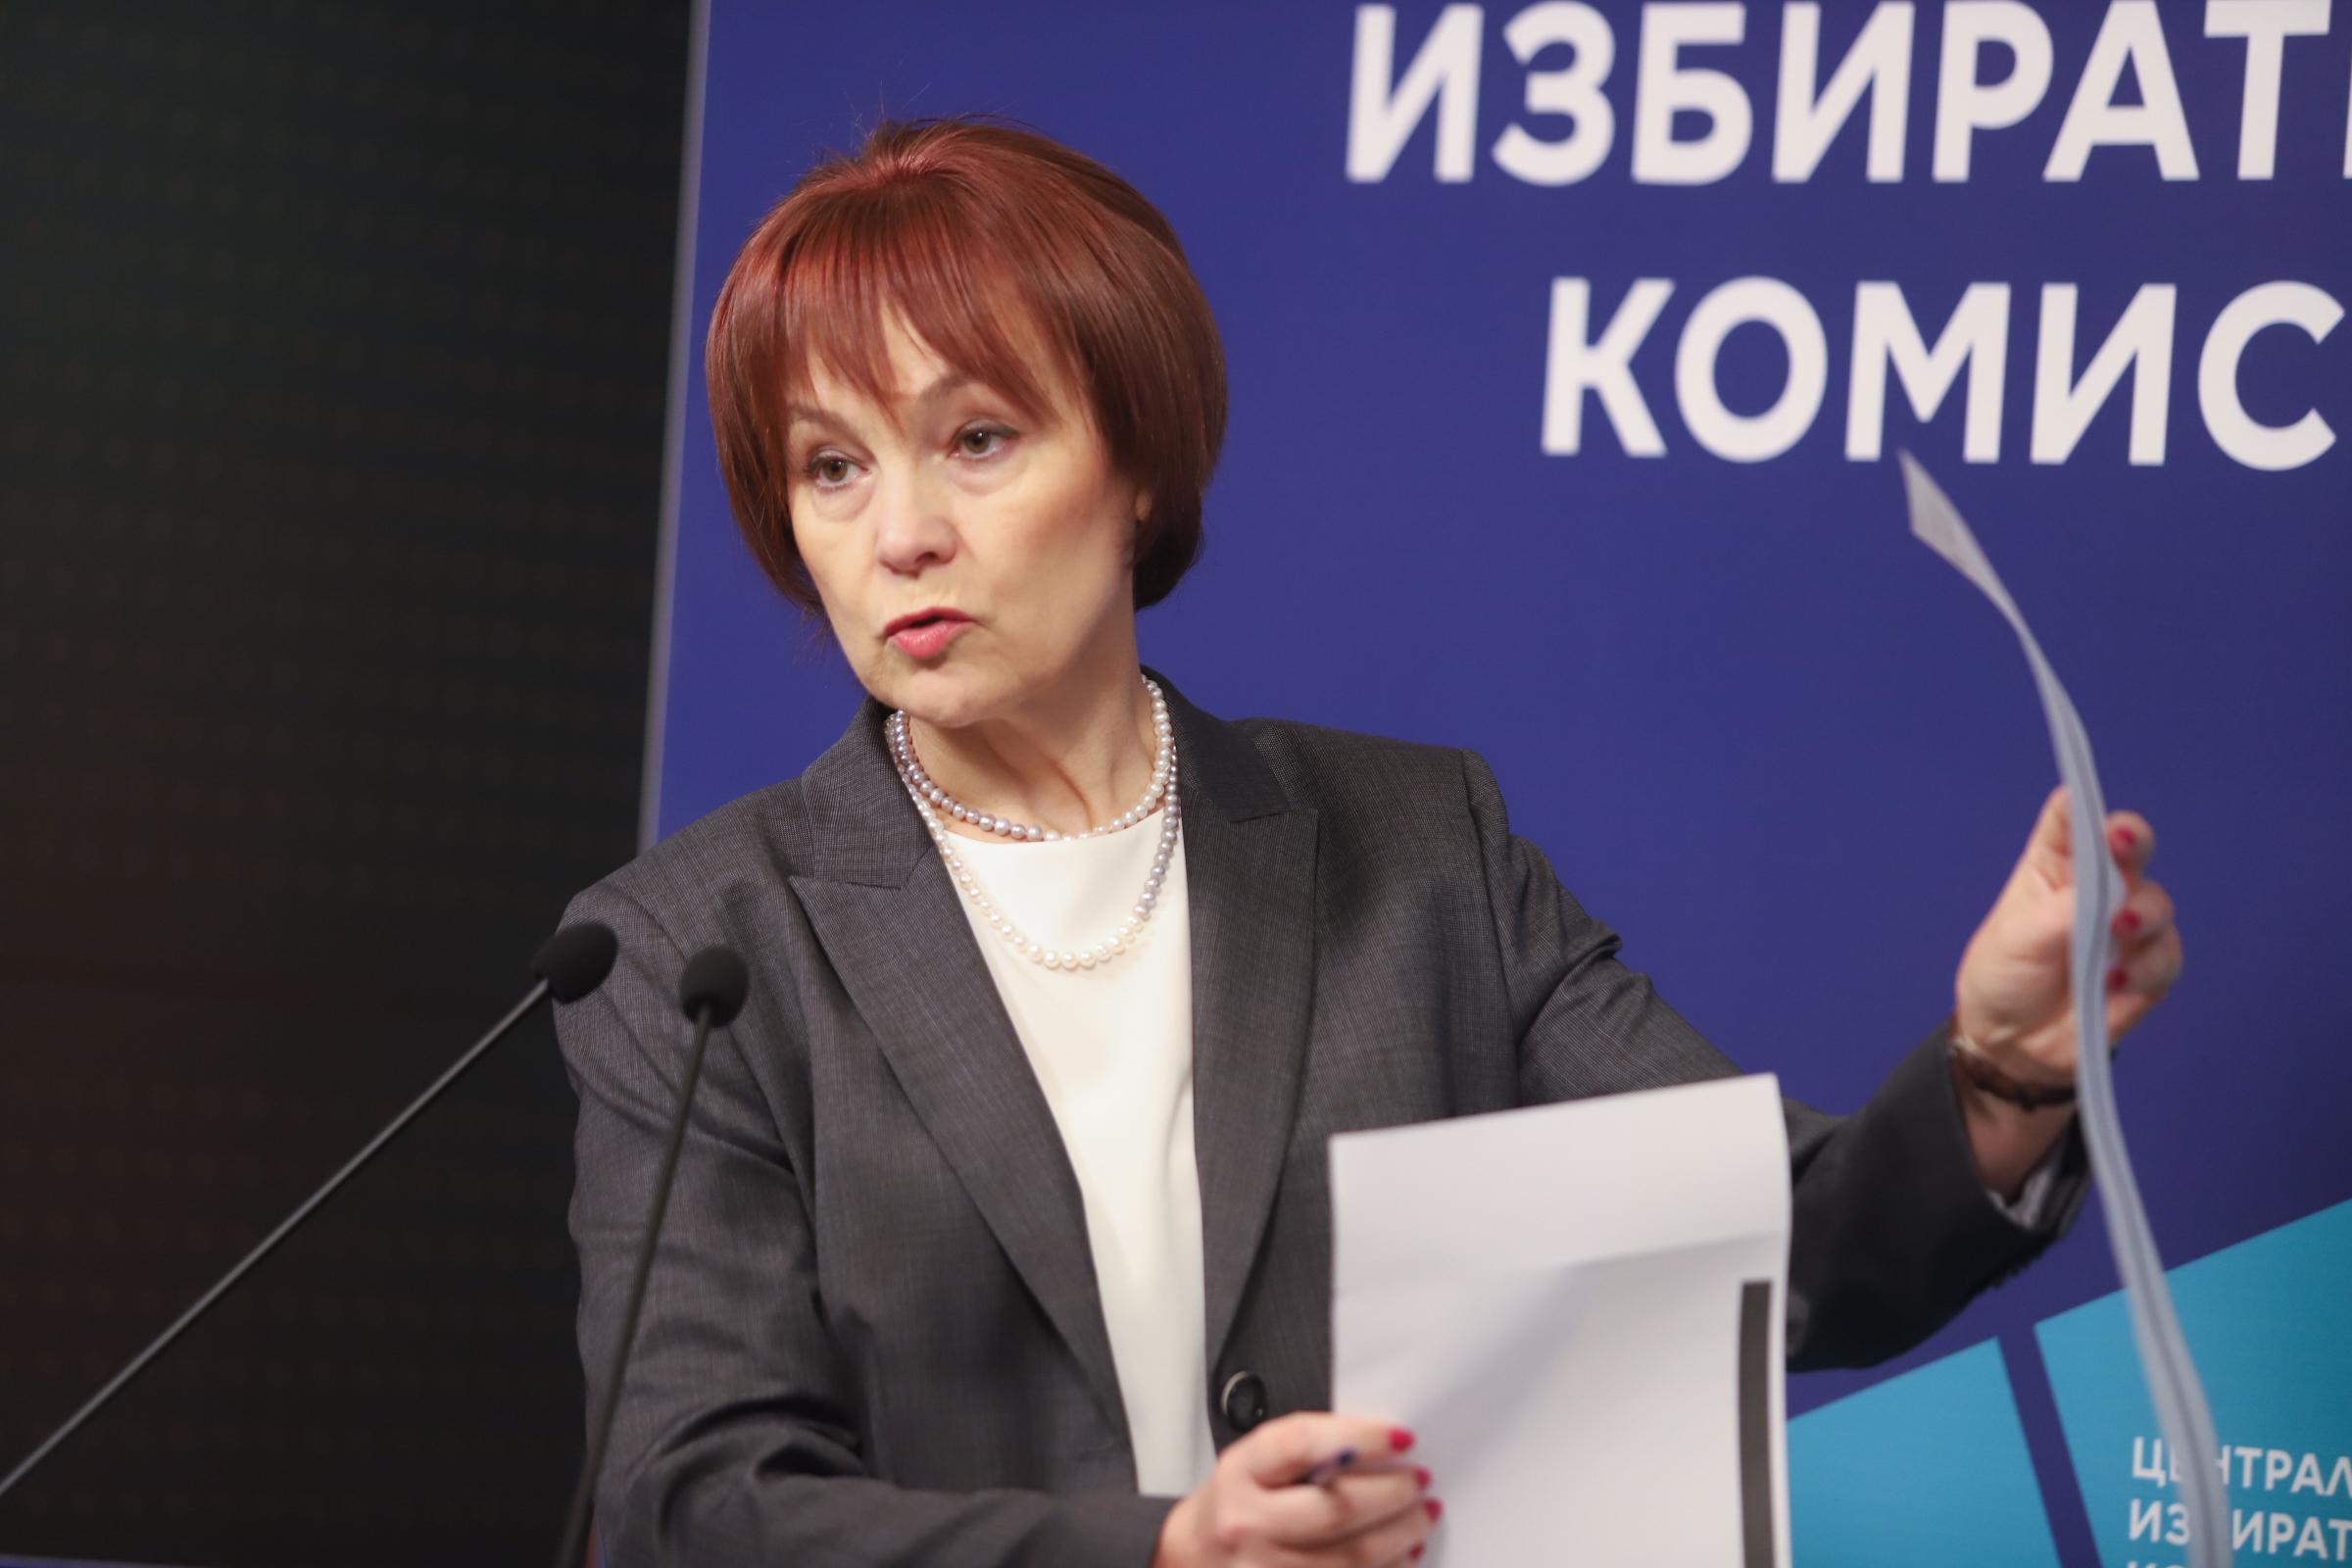 Росица Матева, говорител на Централната избирателна комисия призова членовете на